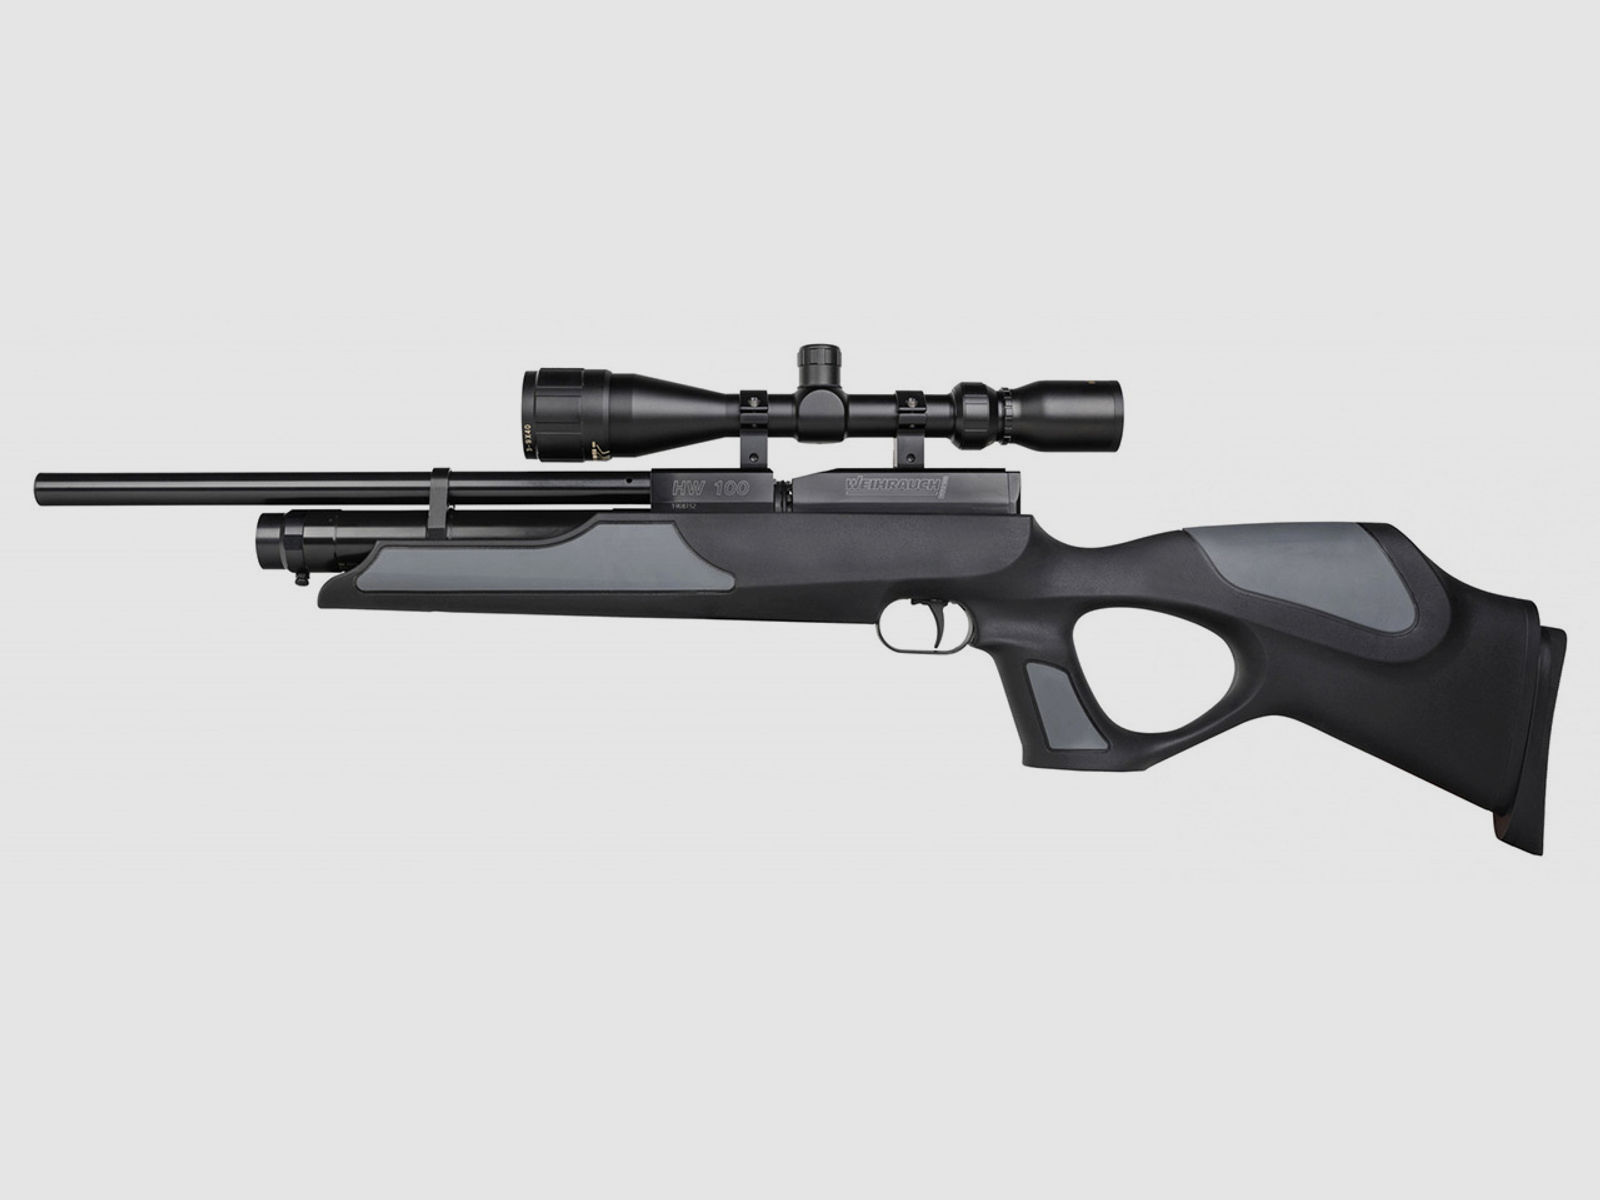 Pressluftgewehr Weihrauch HW 100 TK Carbine F.S.B. Black schwarzer Synthetik-Lochschaft Laufmantel Kaliber 4,5 mm (P18)